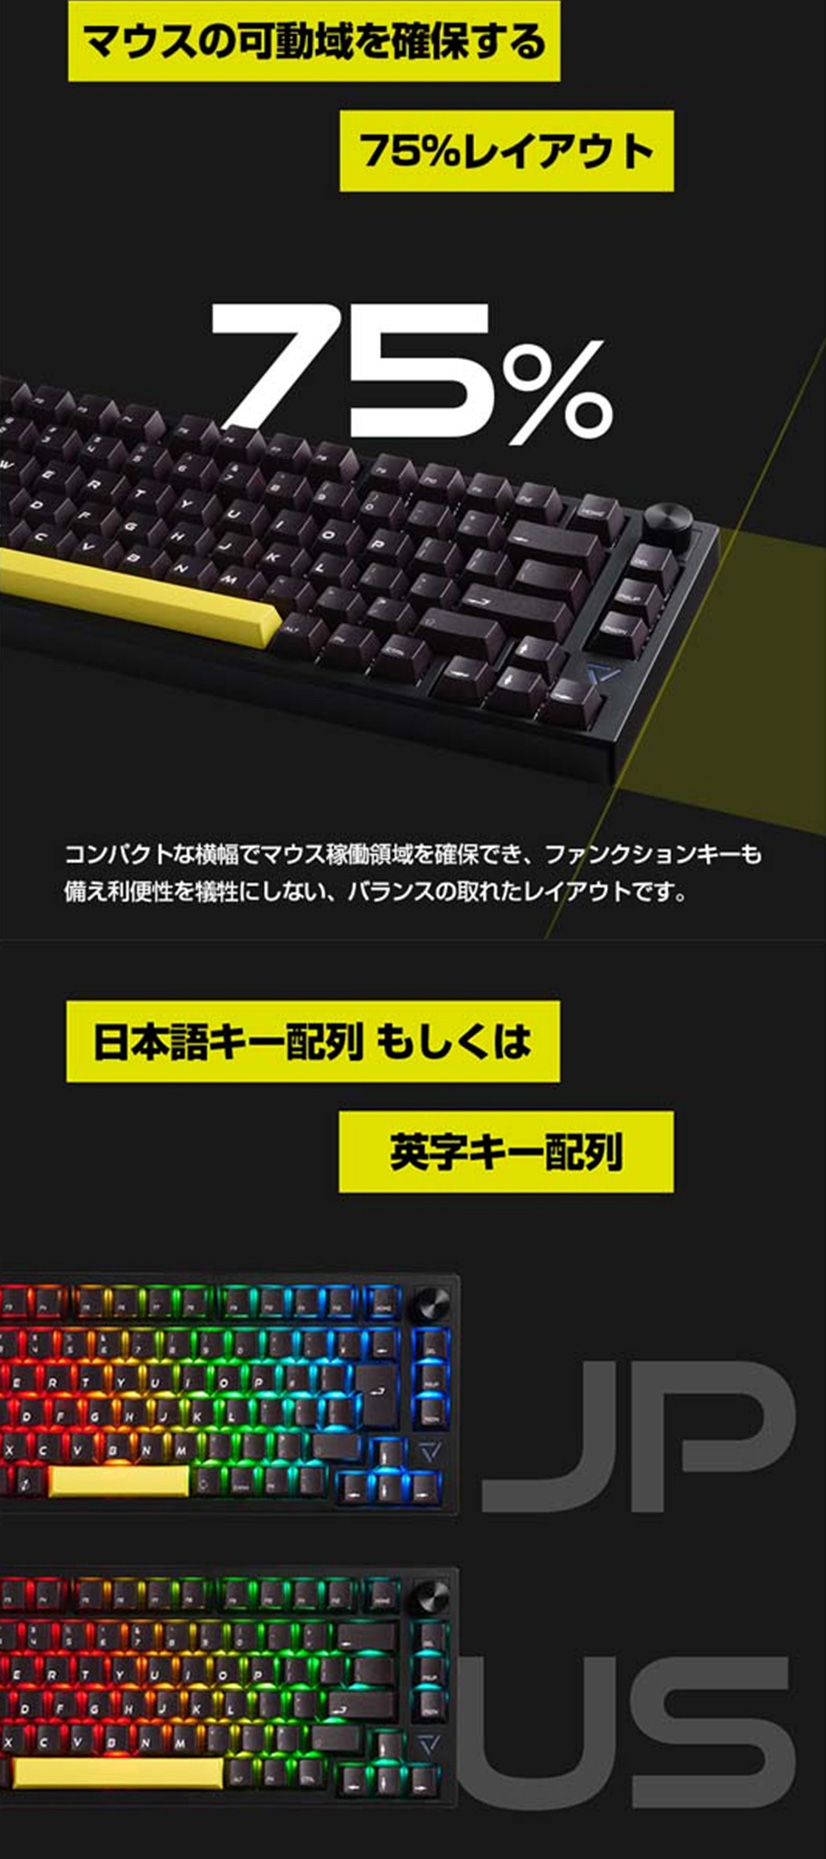 セールSALE％OFFULTRA PLUS ガスケットマウント搭載 ゲーミングメカニカルキーボード メカニカル キーボード UP-MKGA75-J( 日本語キー) UP-MKGA75-A(英語キー) テンキーレス キーボード